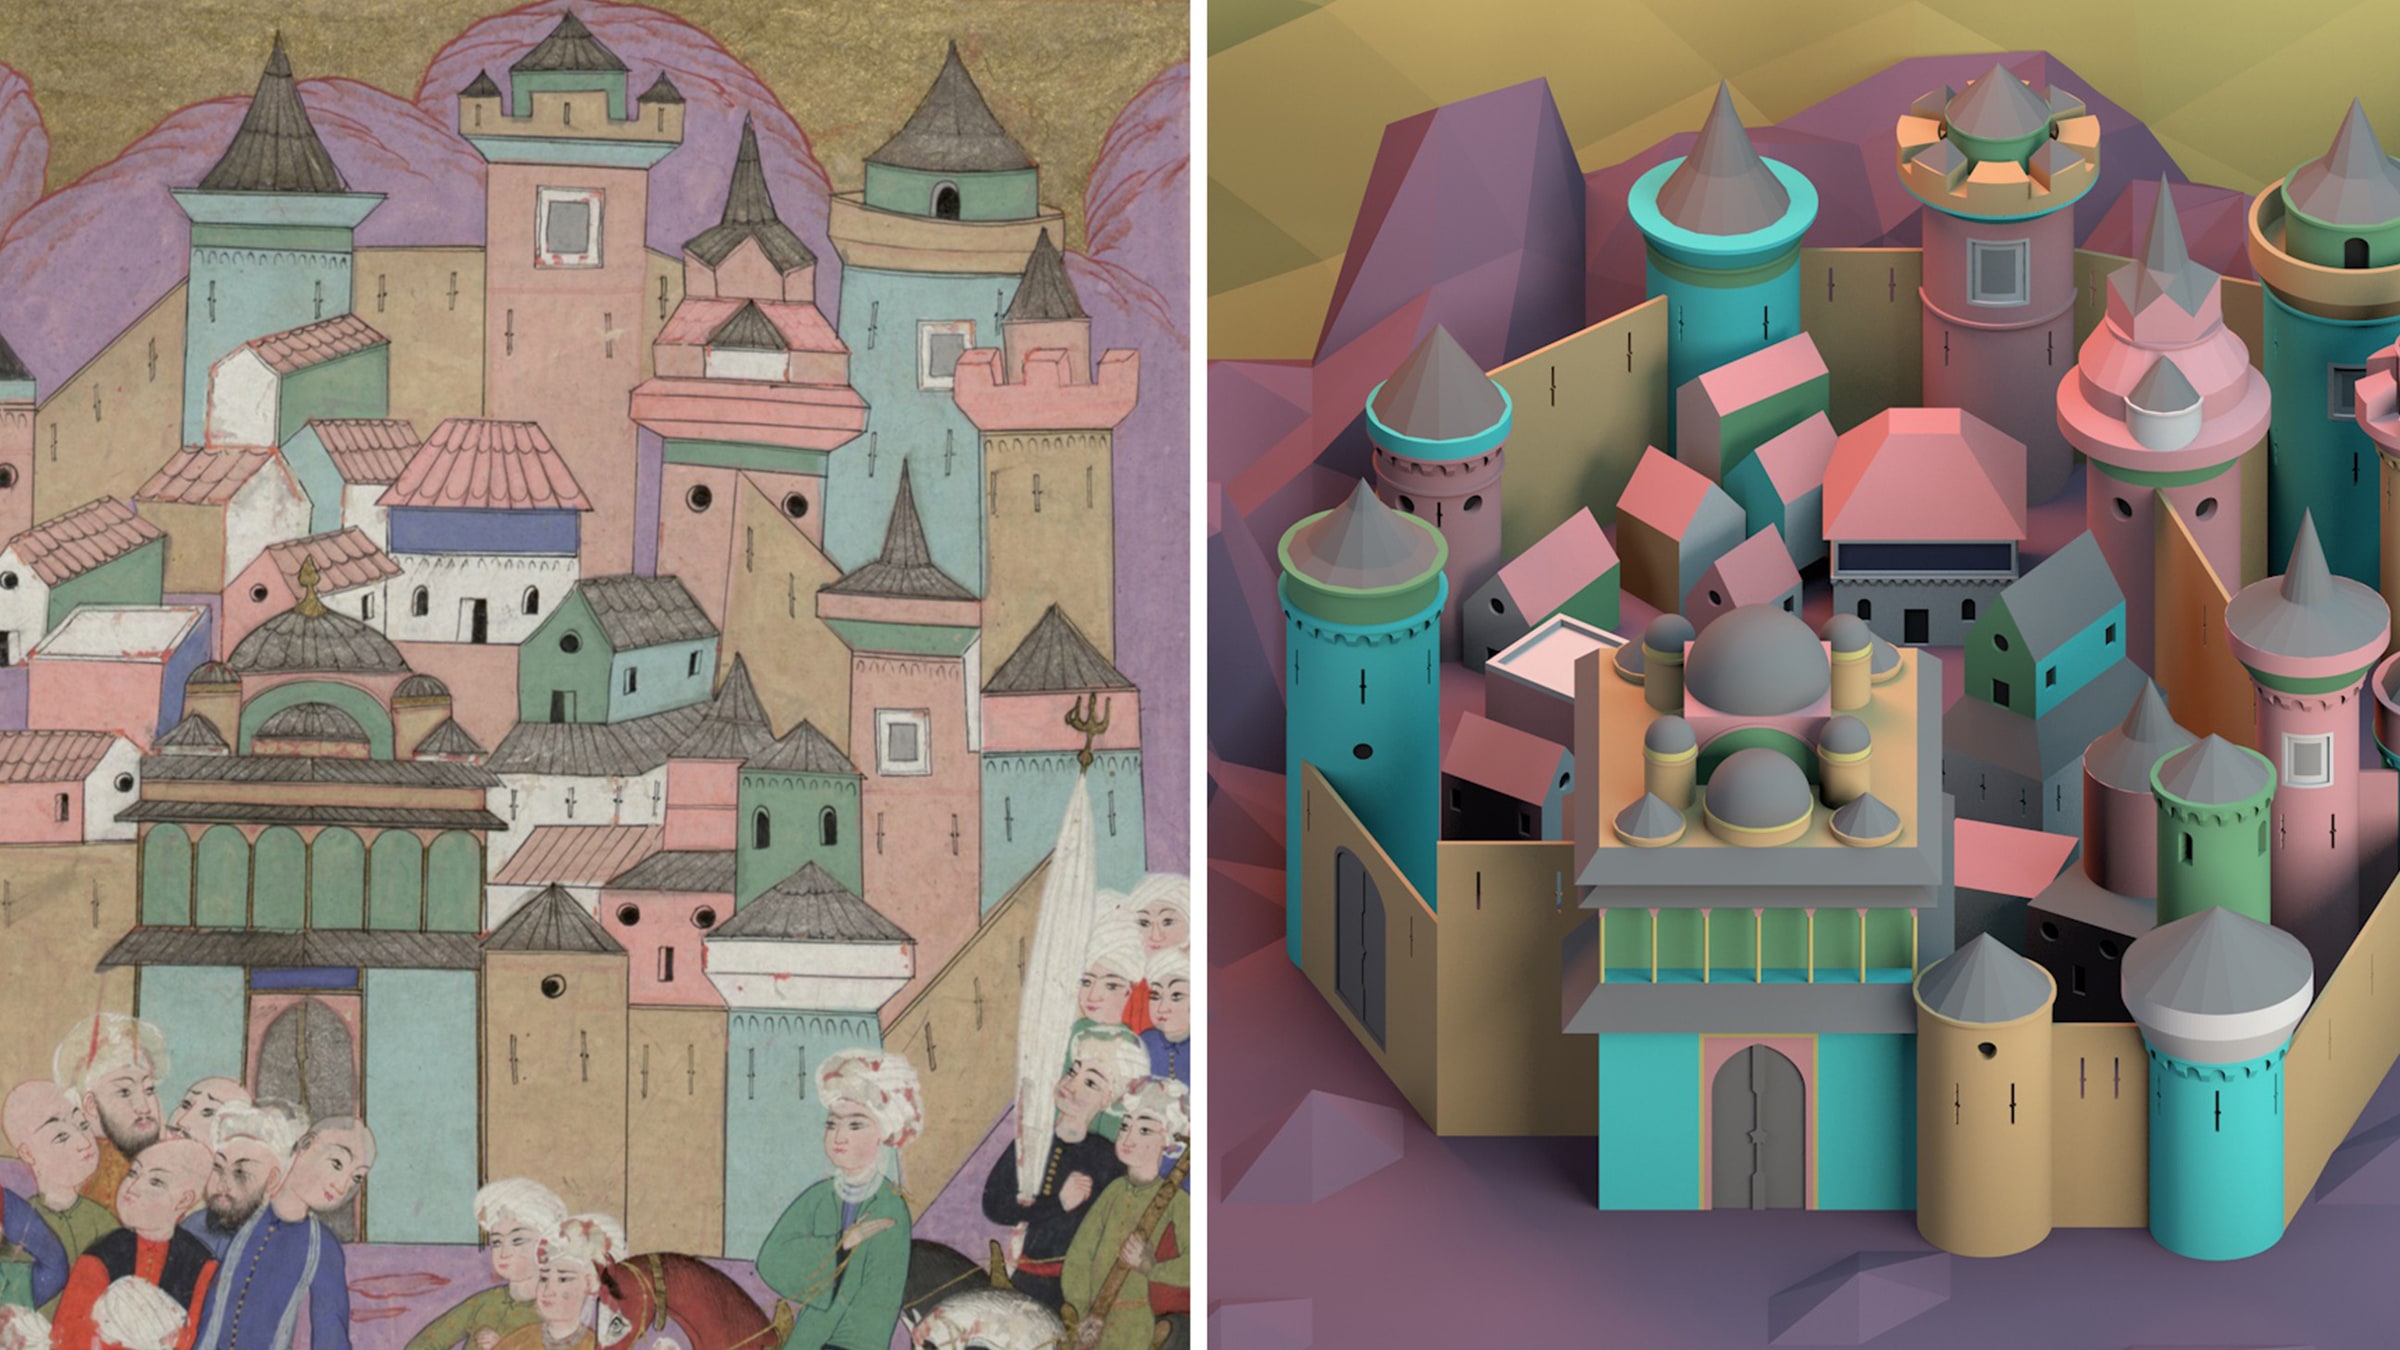 Çevrimiçi Konuşma <br> Osmanlı Minyatür Sanatında Parçalı Mimari Mekân Anlayışı: <br> Kültürler Arası Etkileşimler ve Zaman Ötesi İlişkiler